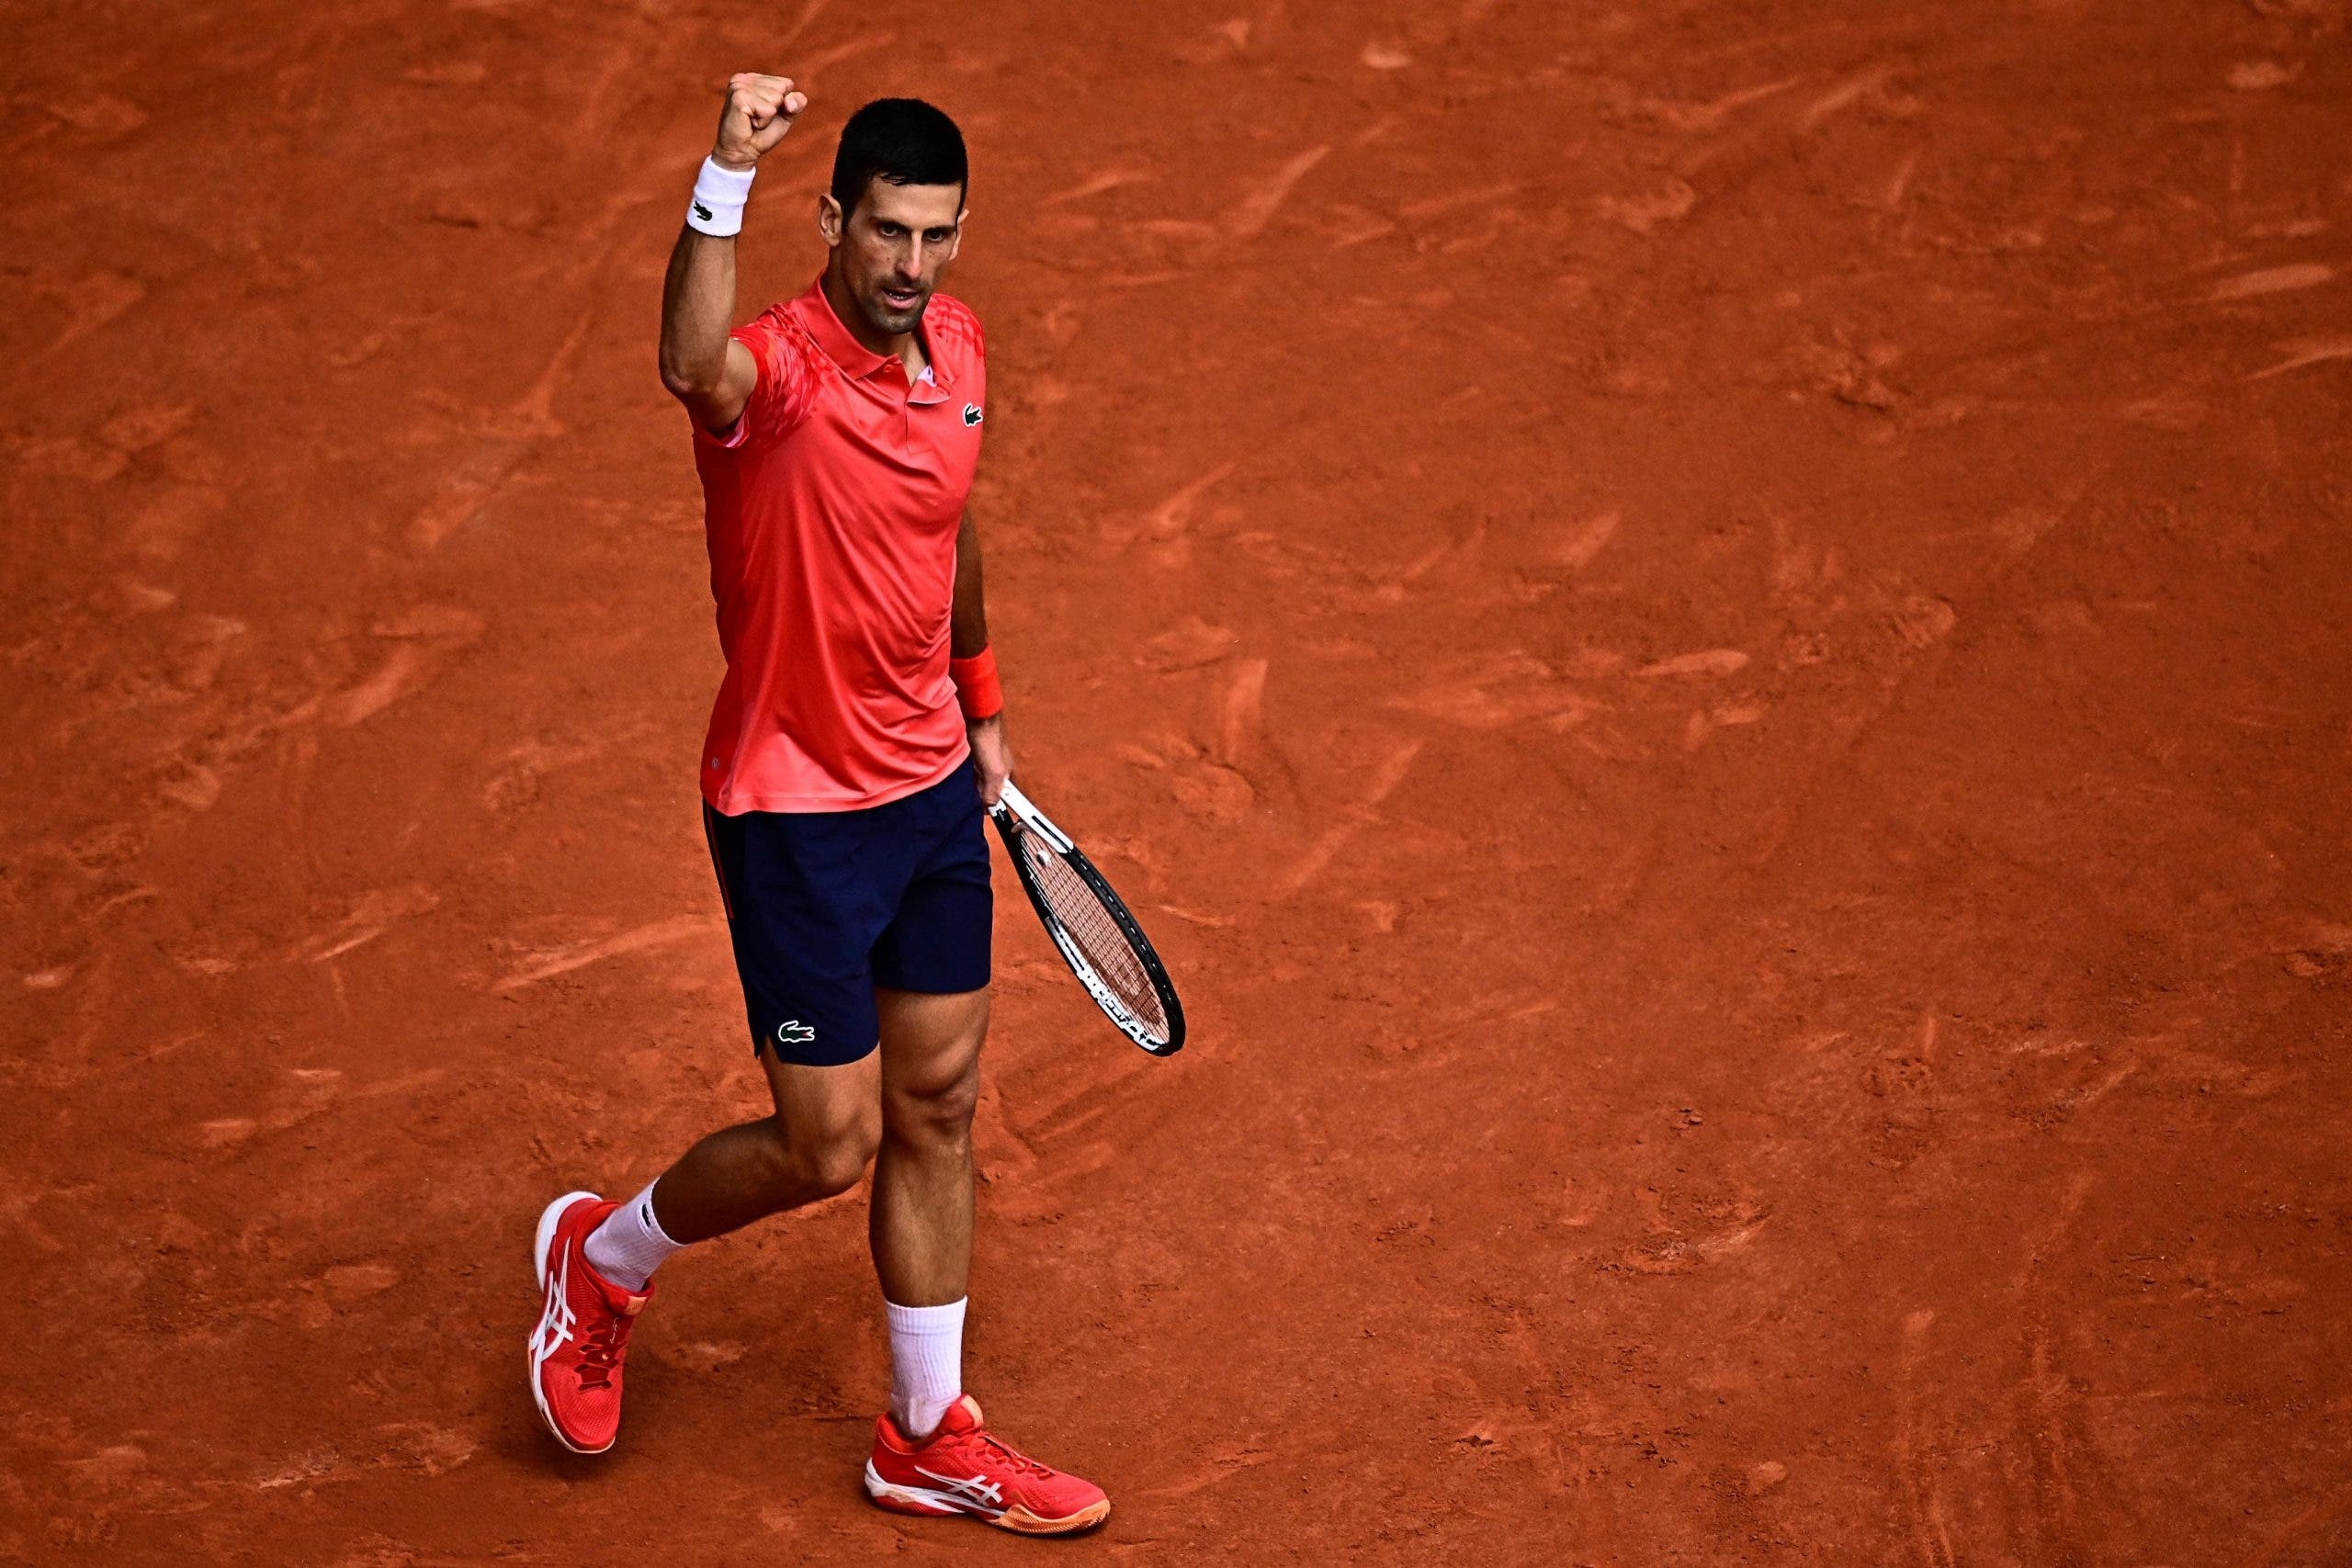 Campeón y récord Djokovic gana Roland Garros y conquista su 23° título